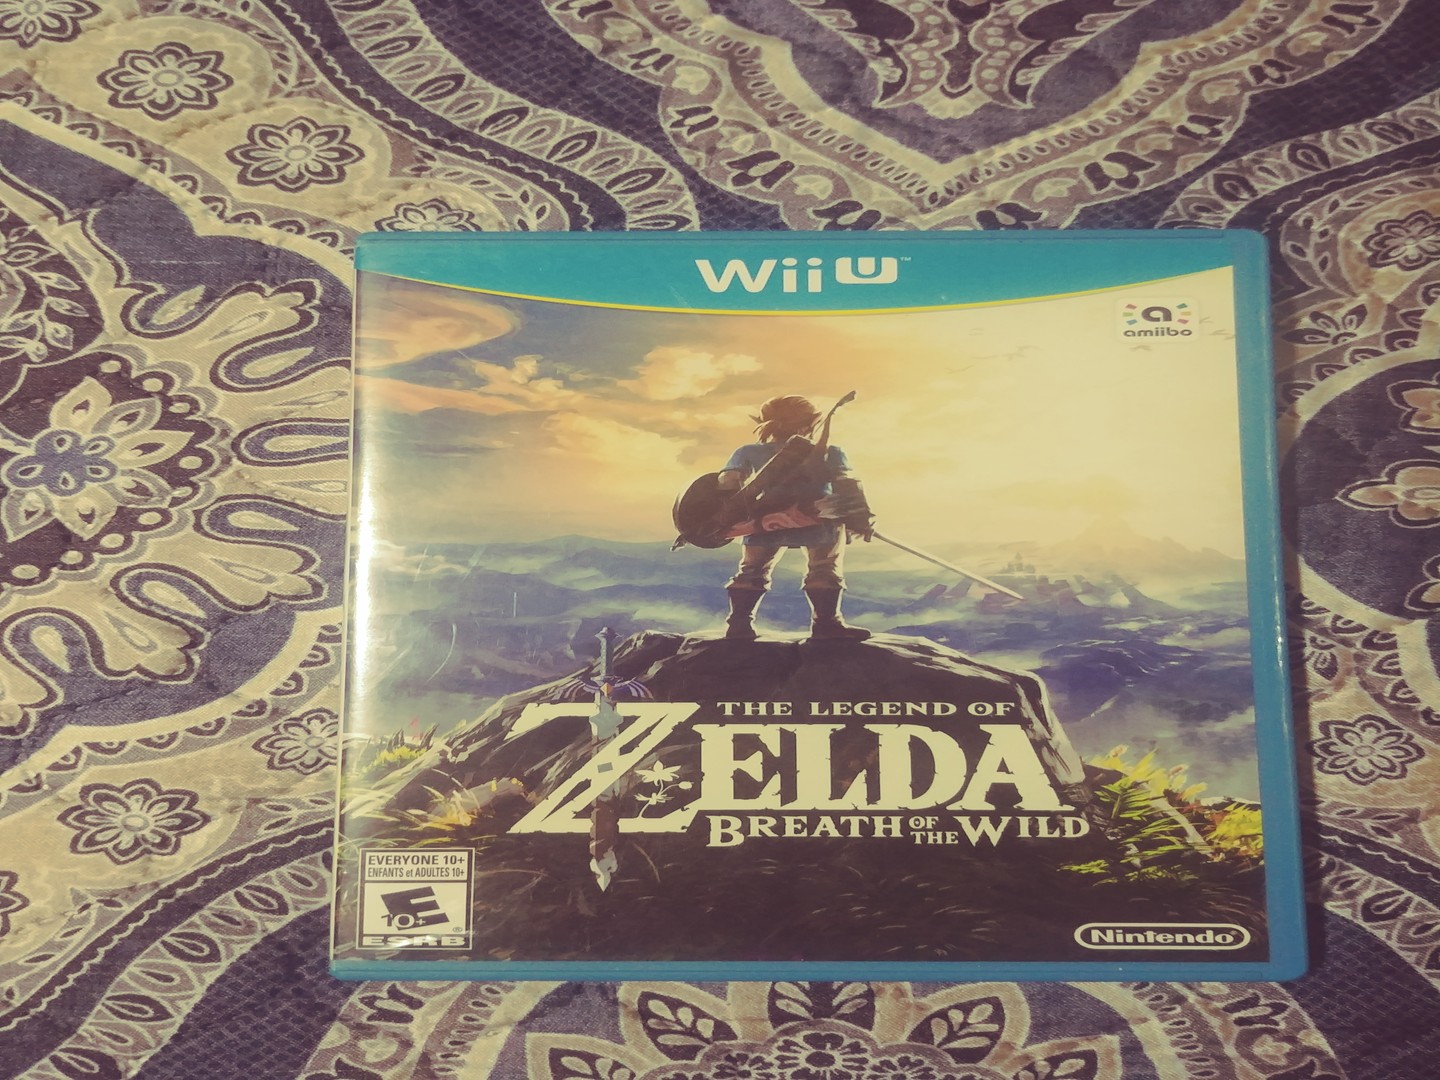 consolas y videojuegos - The legend of zelda breath of the wild Wii u